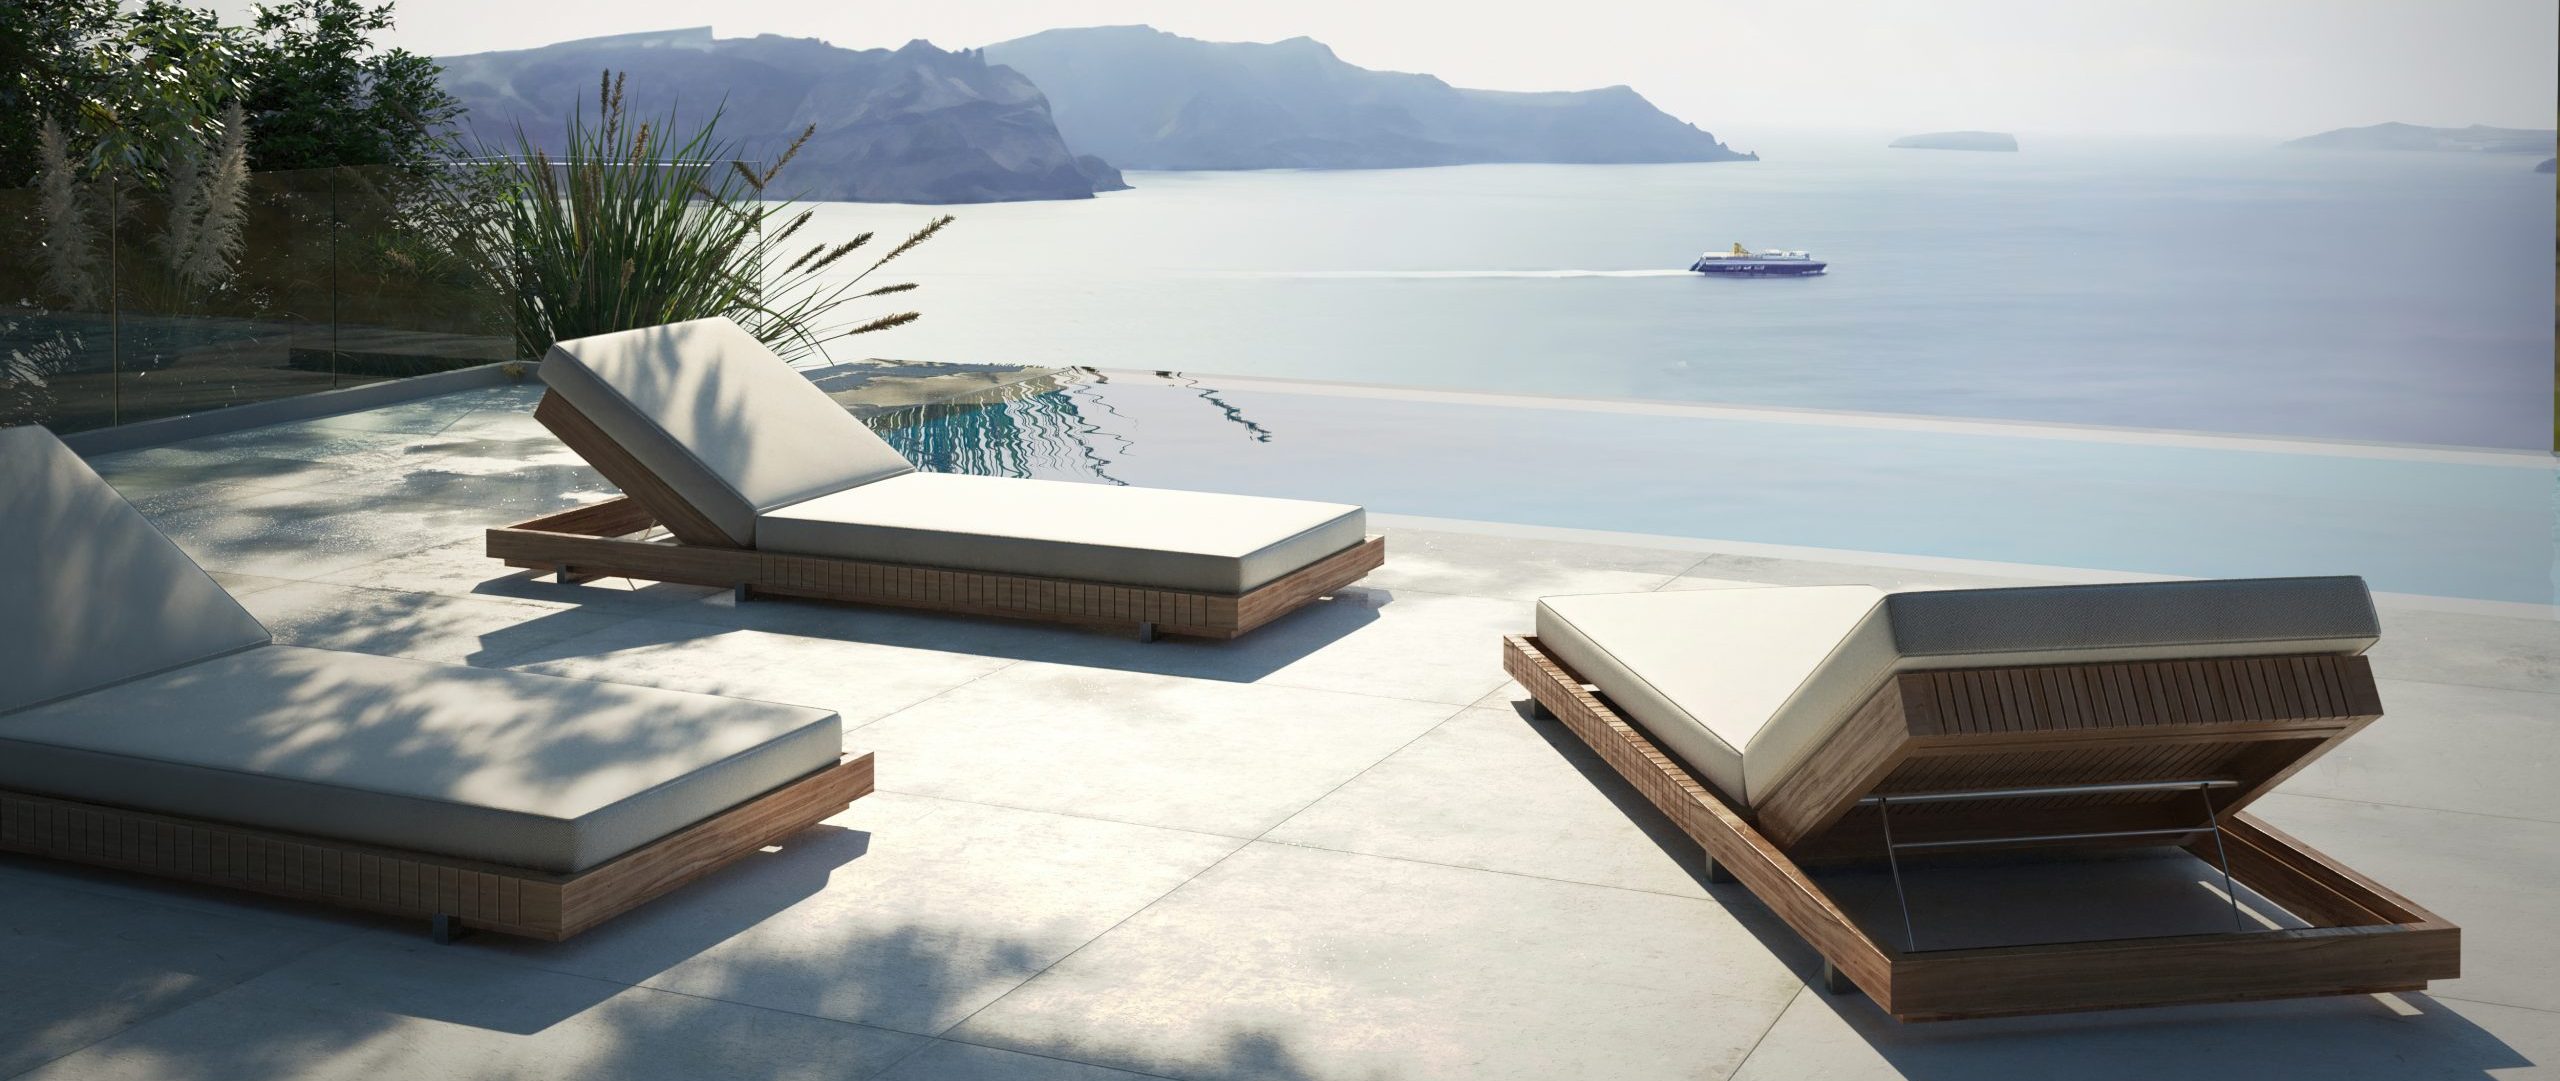 Capri lounge chair terrazza sul mare